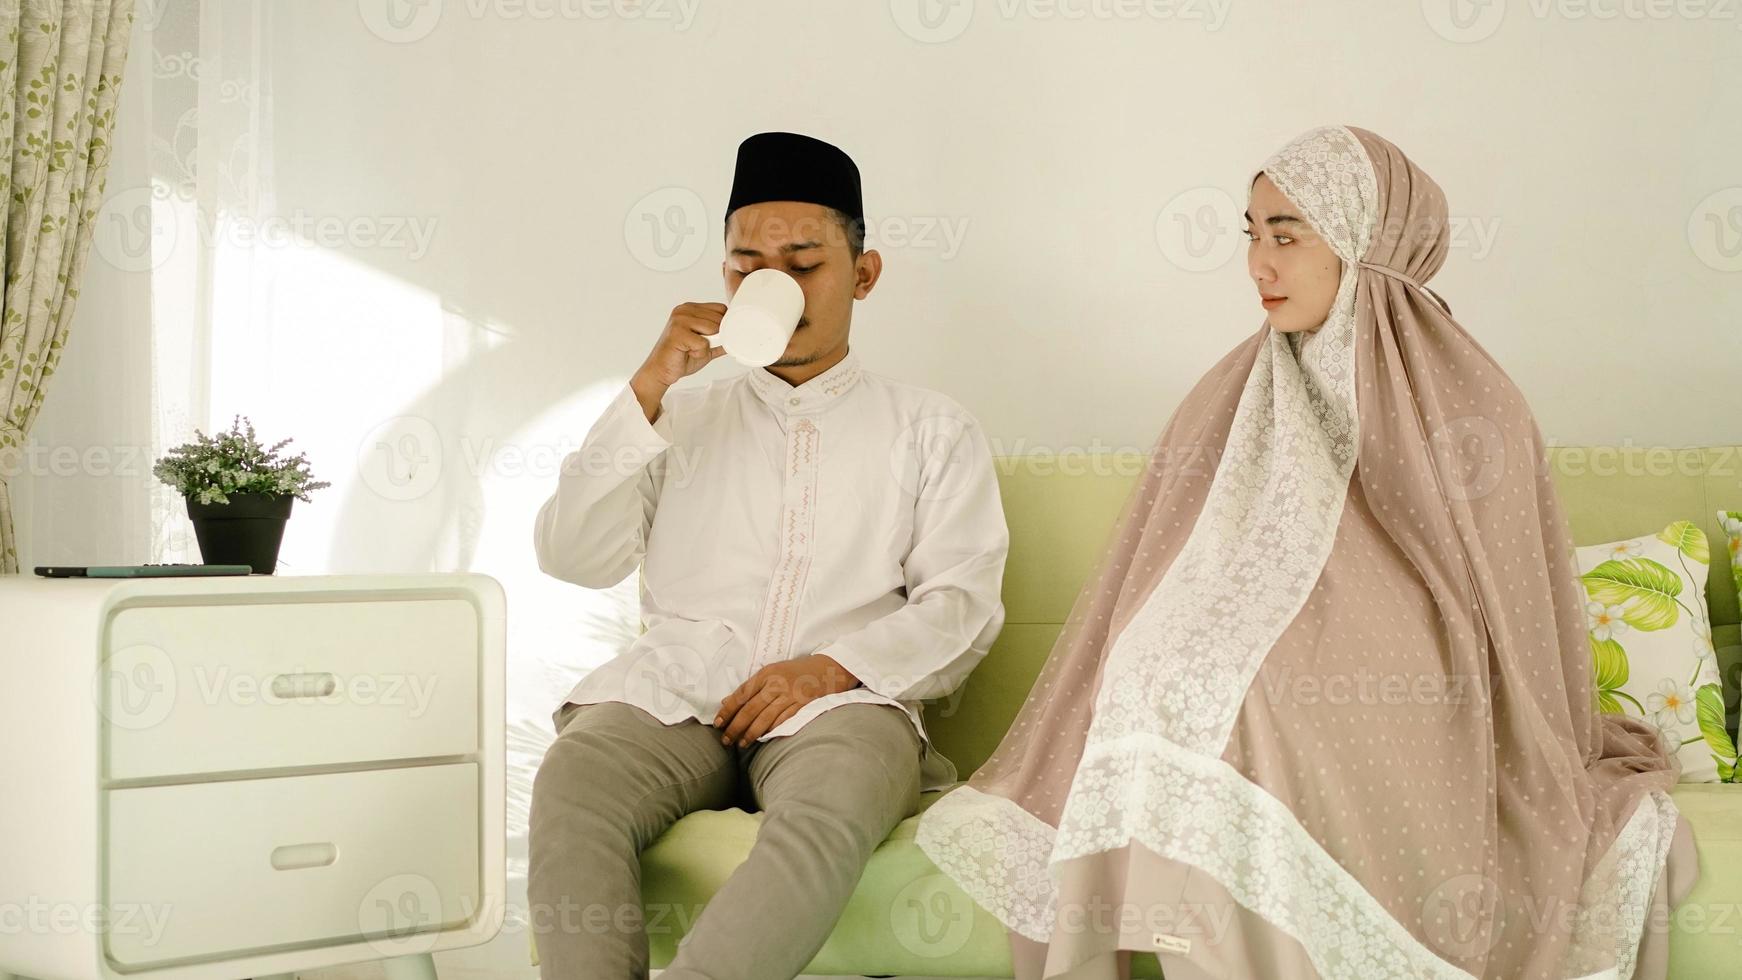 uomo musulmano che si gode un drink con sua moglie foto